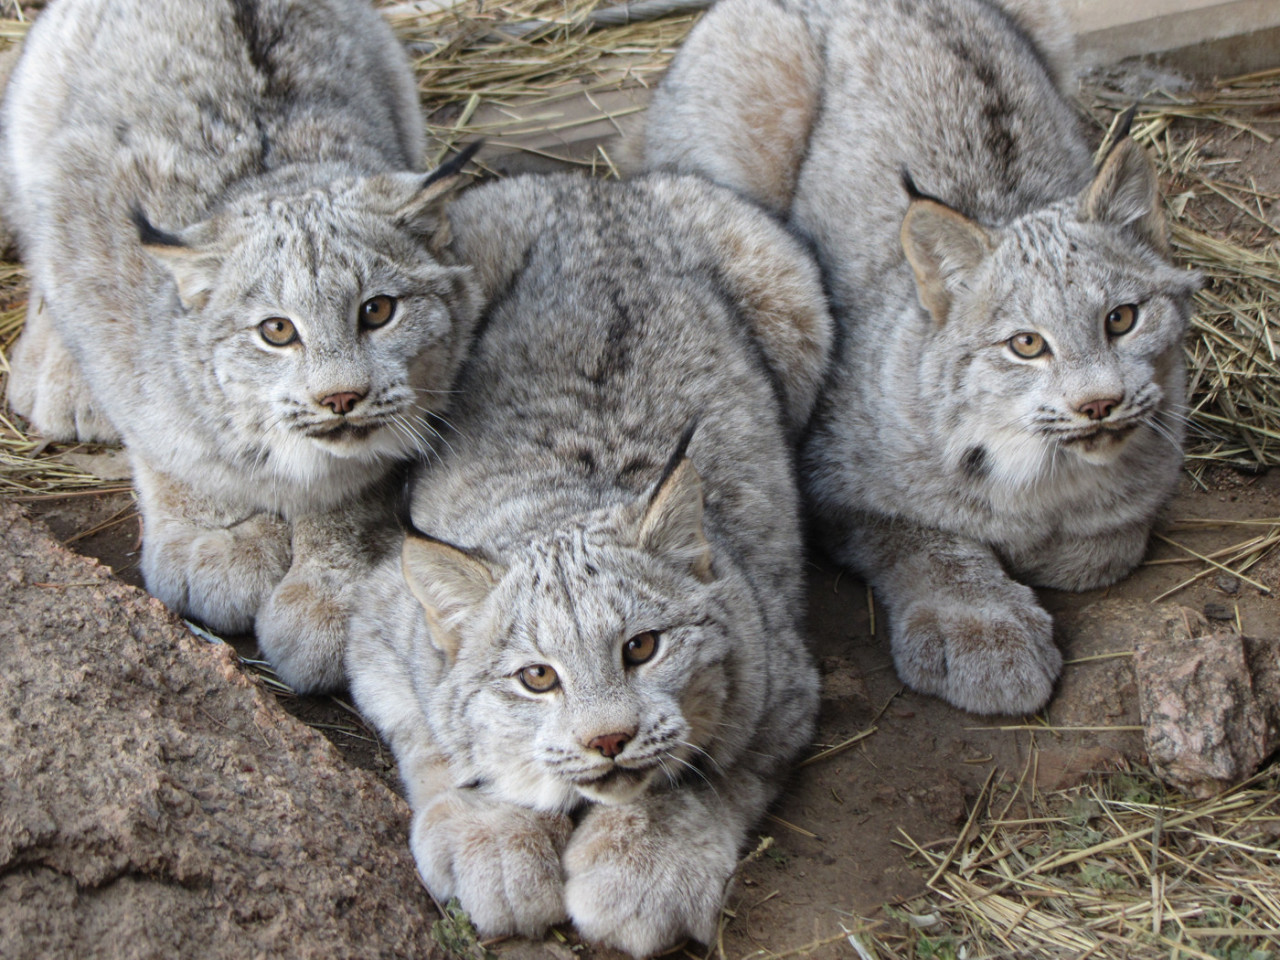 Young Canadian Lynxes (Source: http://ift.tt/1MYKSrh)